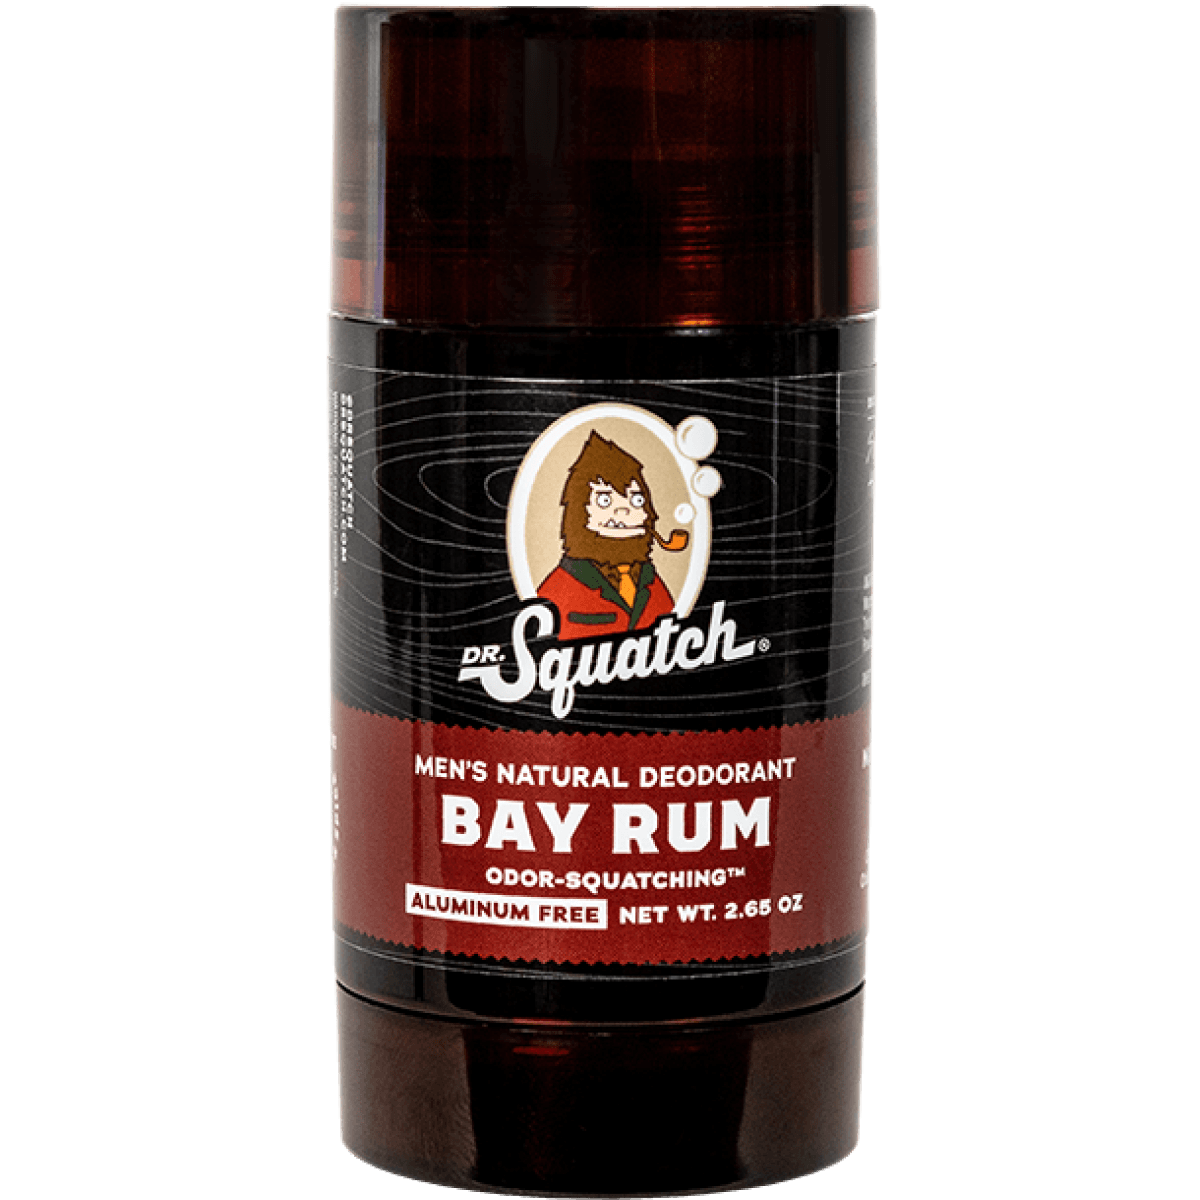 Dr. Squatch Deodorant Bay Rum